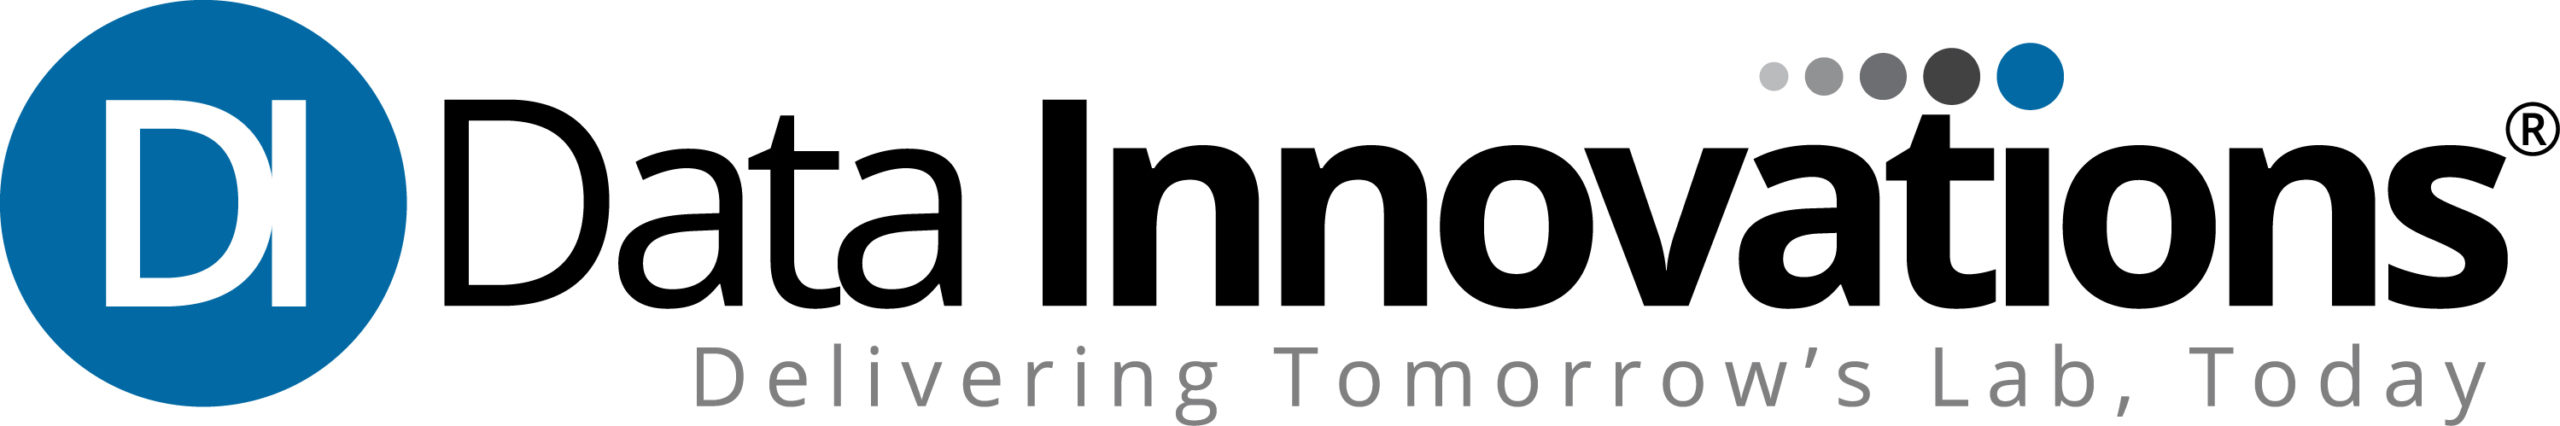 DI Company Logo_Tomorrows Lab_RGB